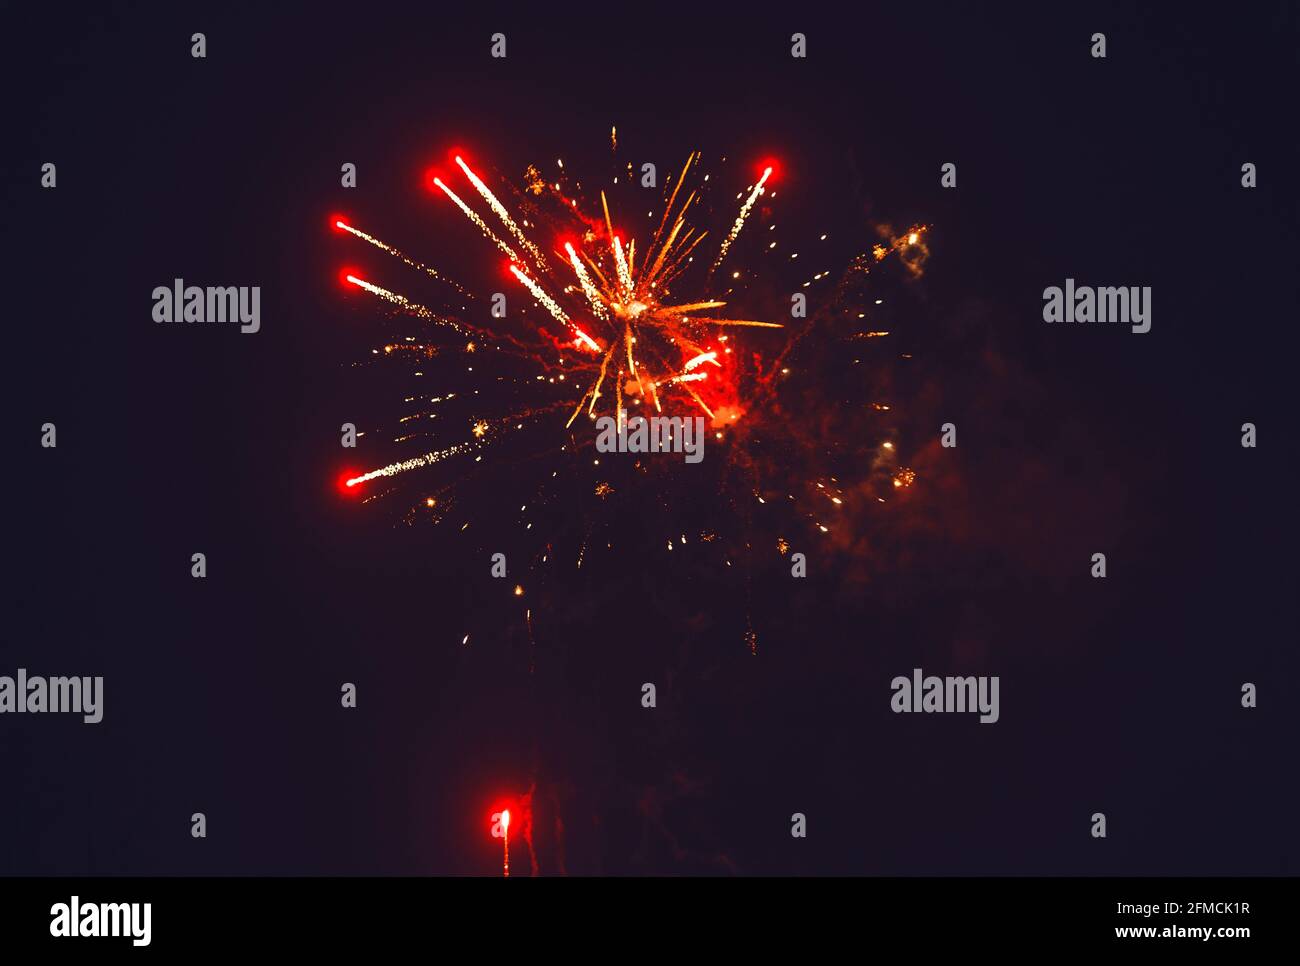 Incredibili fuochi d'artificio isolati su sfondo scuro. Festa dei fuochi d'artificio, 4 luglio, giorno dell'Indipendenza. Foto Stock